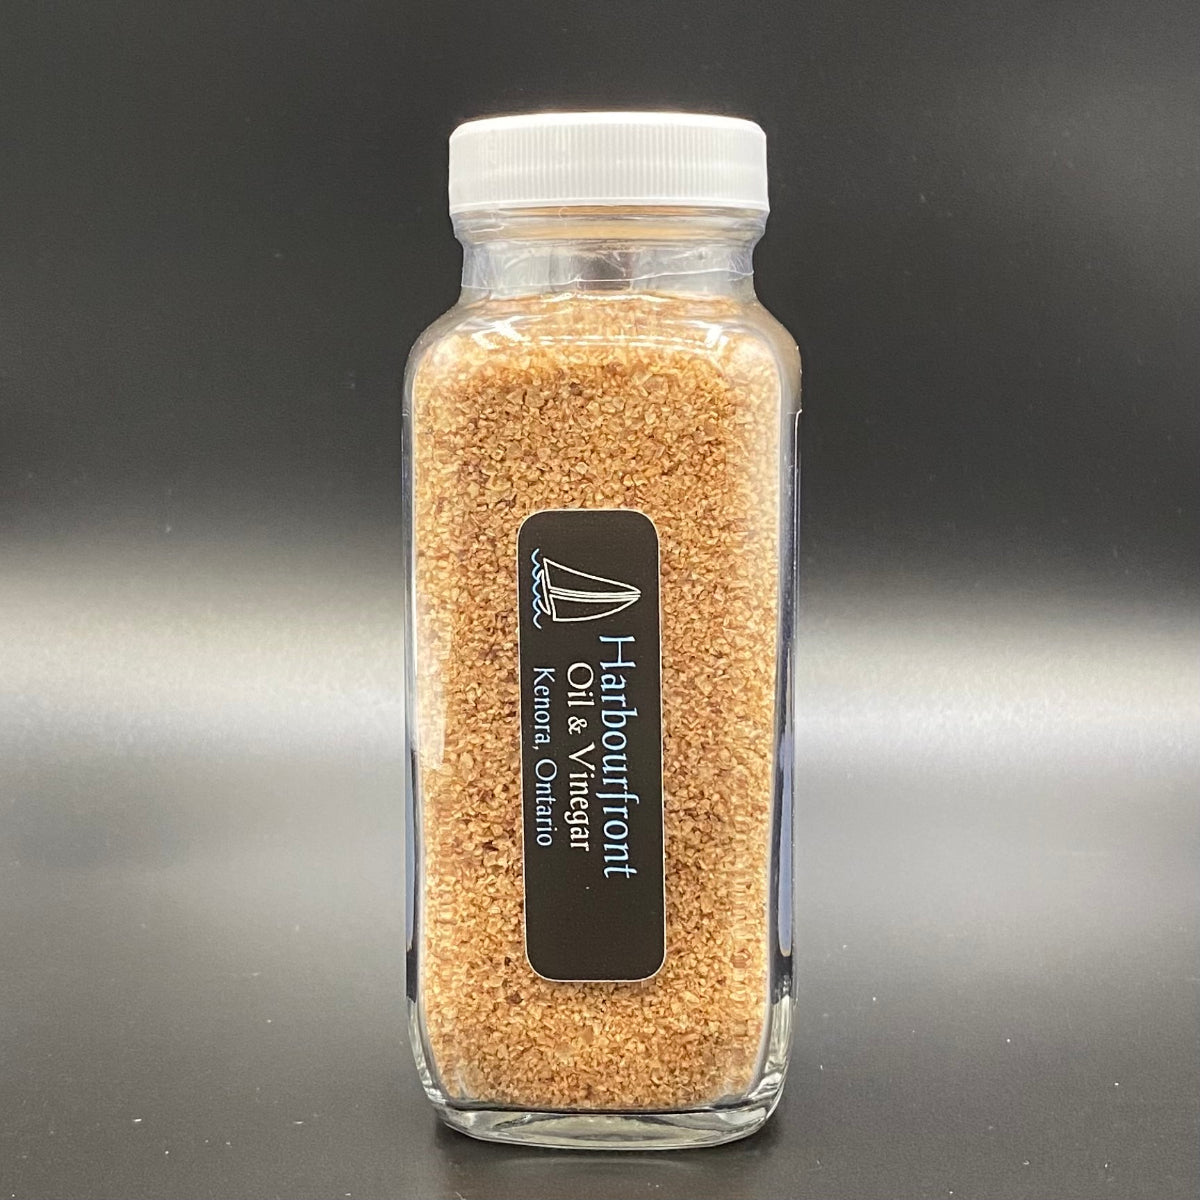 Applewood Smoked Sea Salt - Fine Flaked